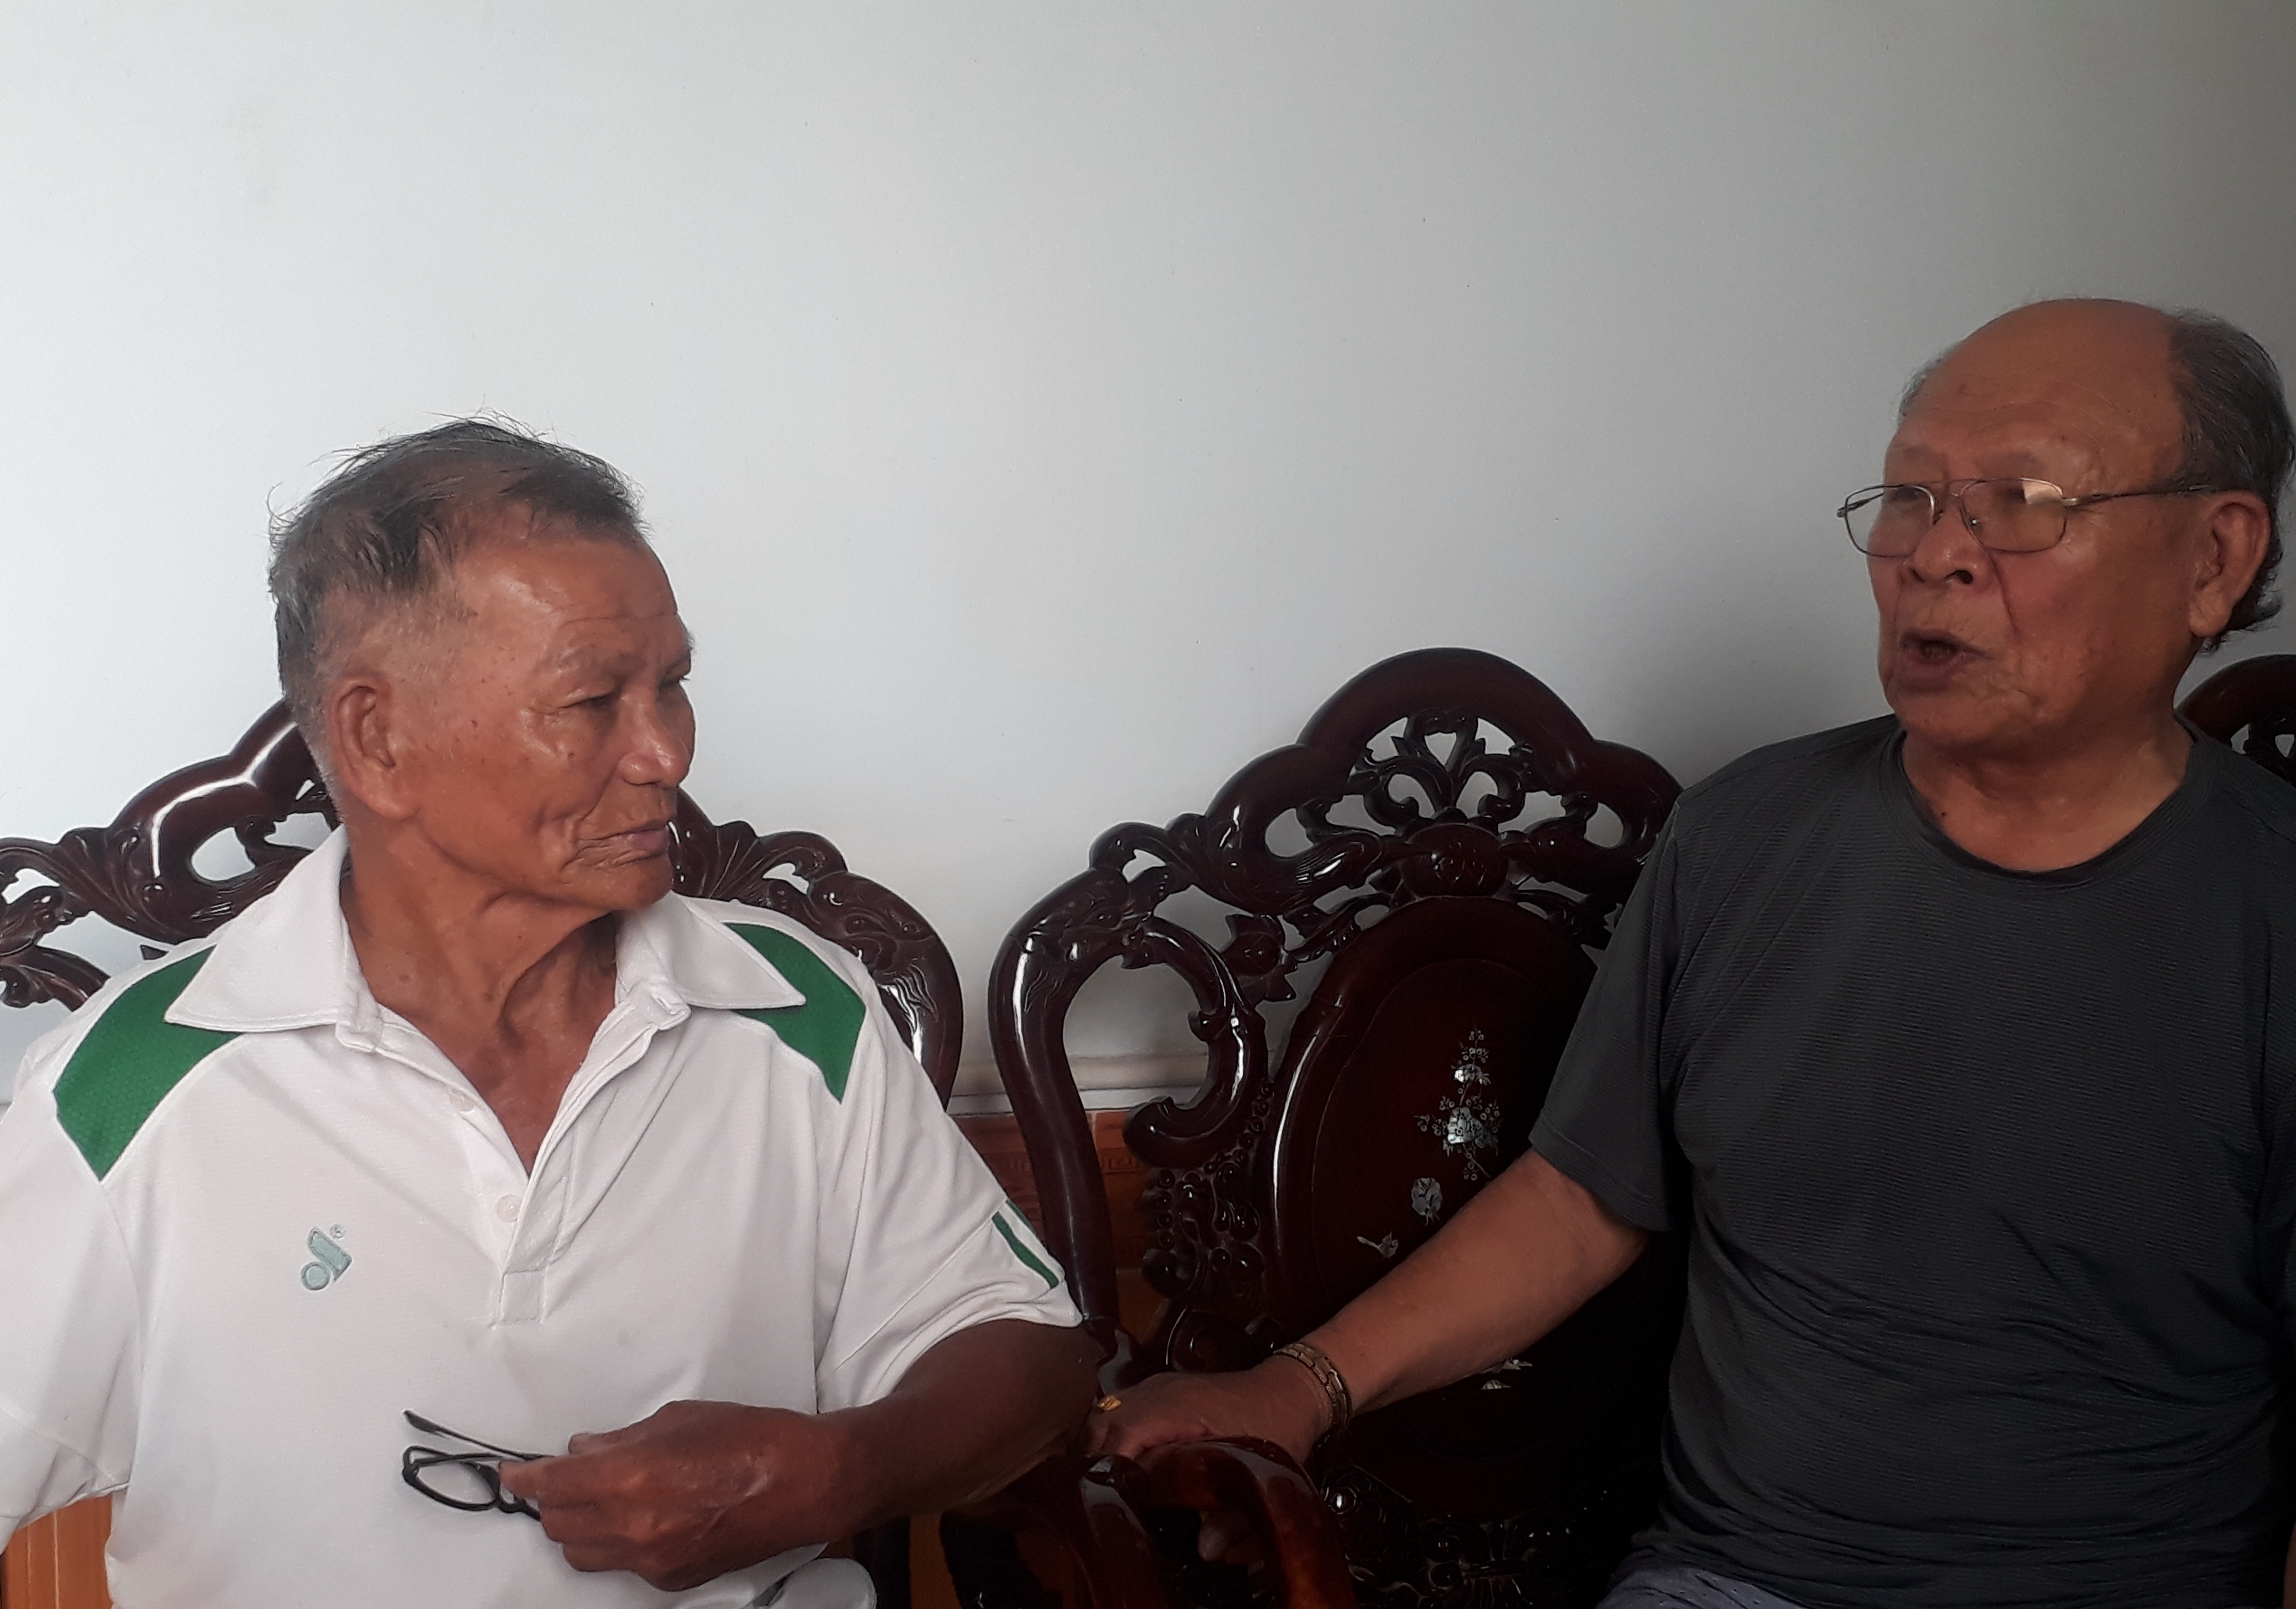  Ông Nguyễn Mạnh Điền (bên phải), Chủ nhiệm và ông Hoàng Quang Vàng, Phó Chủ nhiệm CLB bơi lội xã Bảo Ninh kể về một thời vang danh của “xã Yết Kiêu” Bảo Ninh.